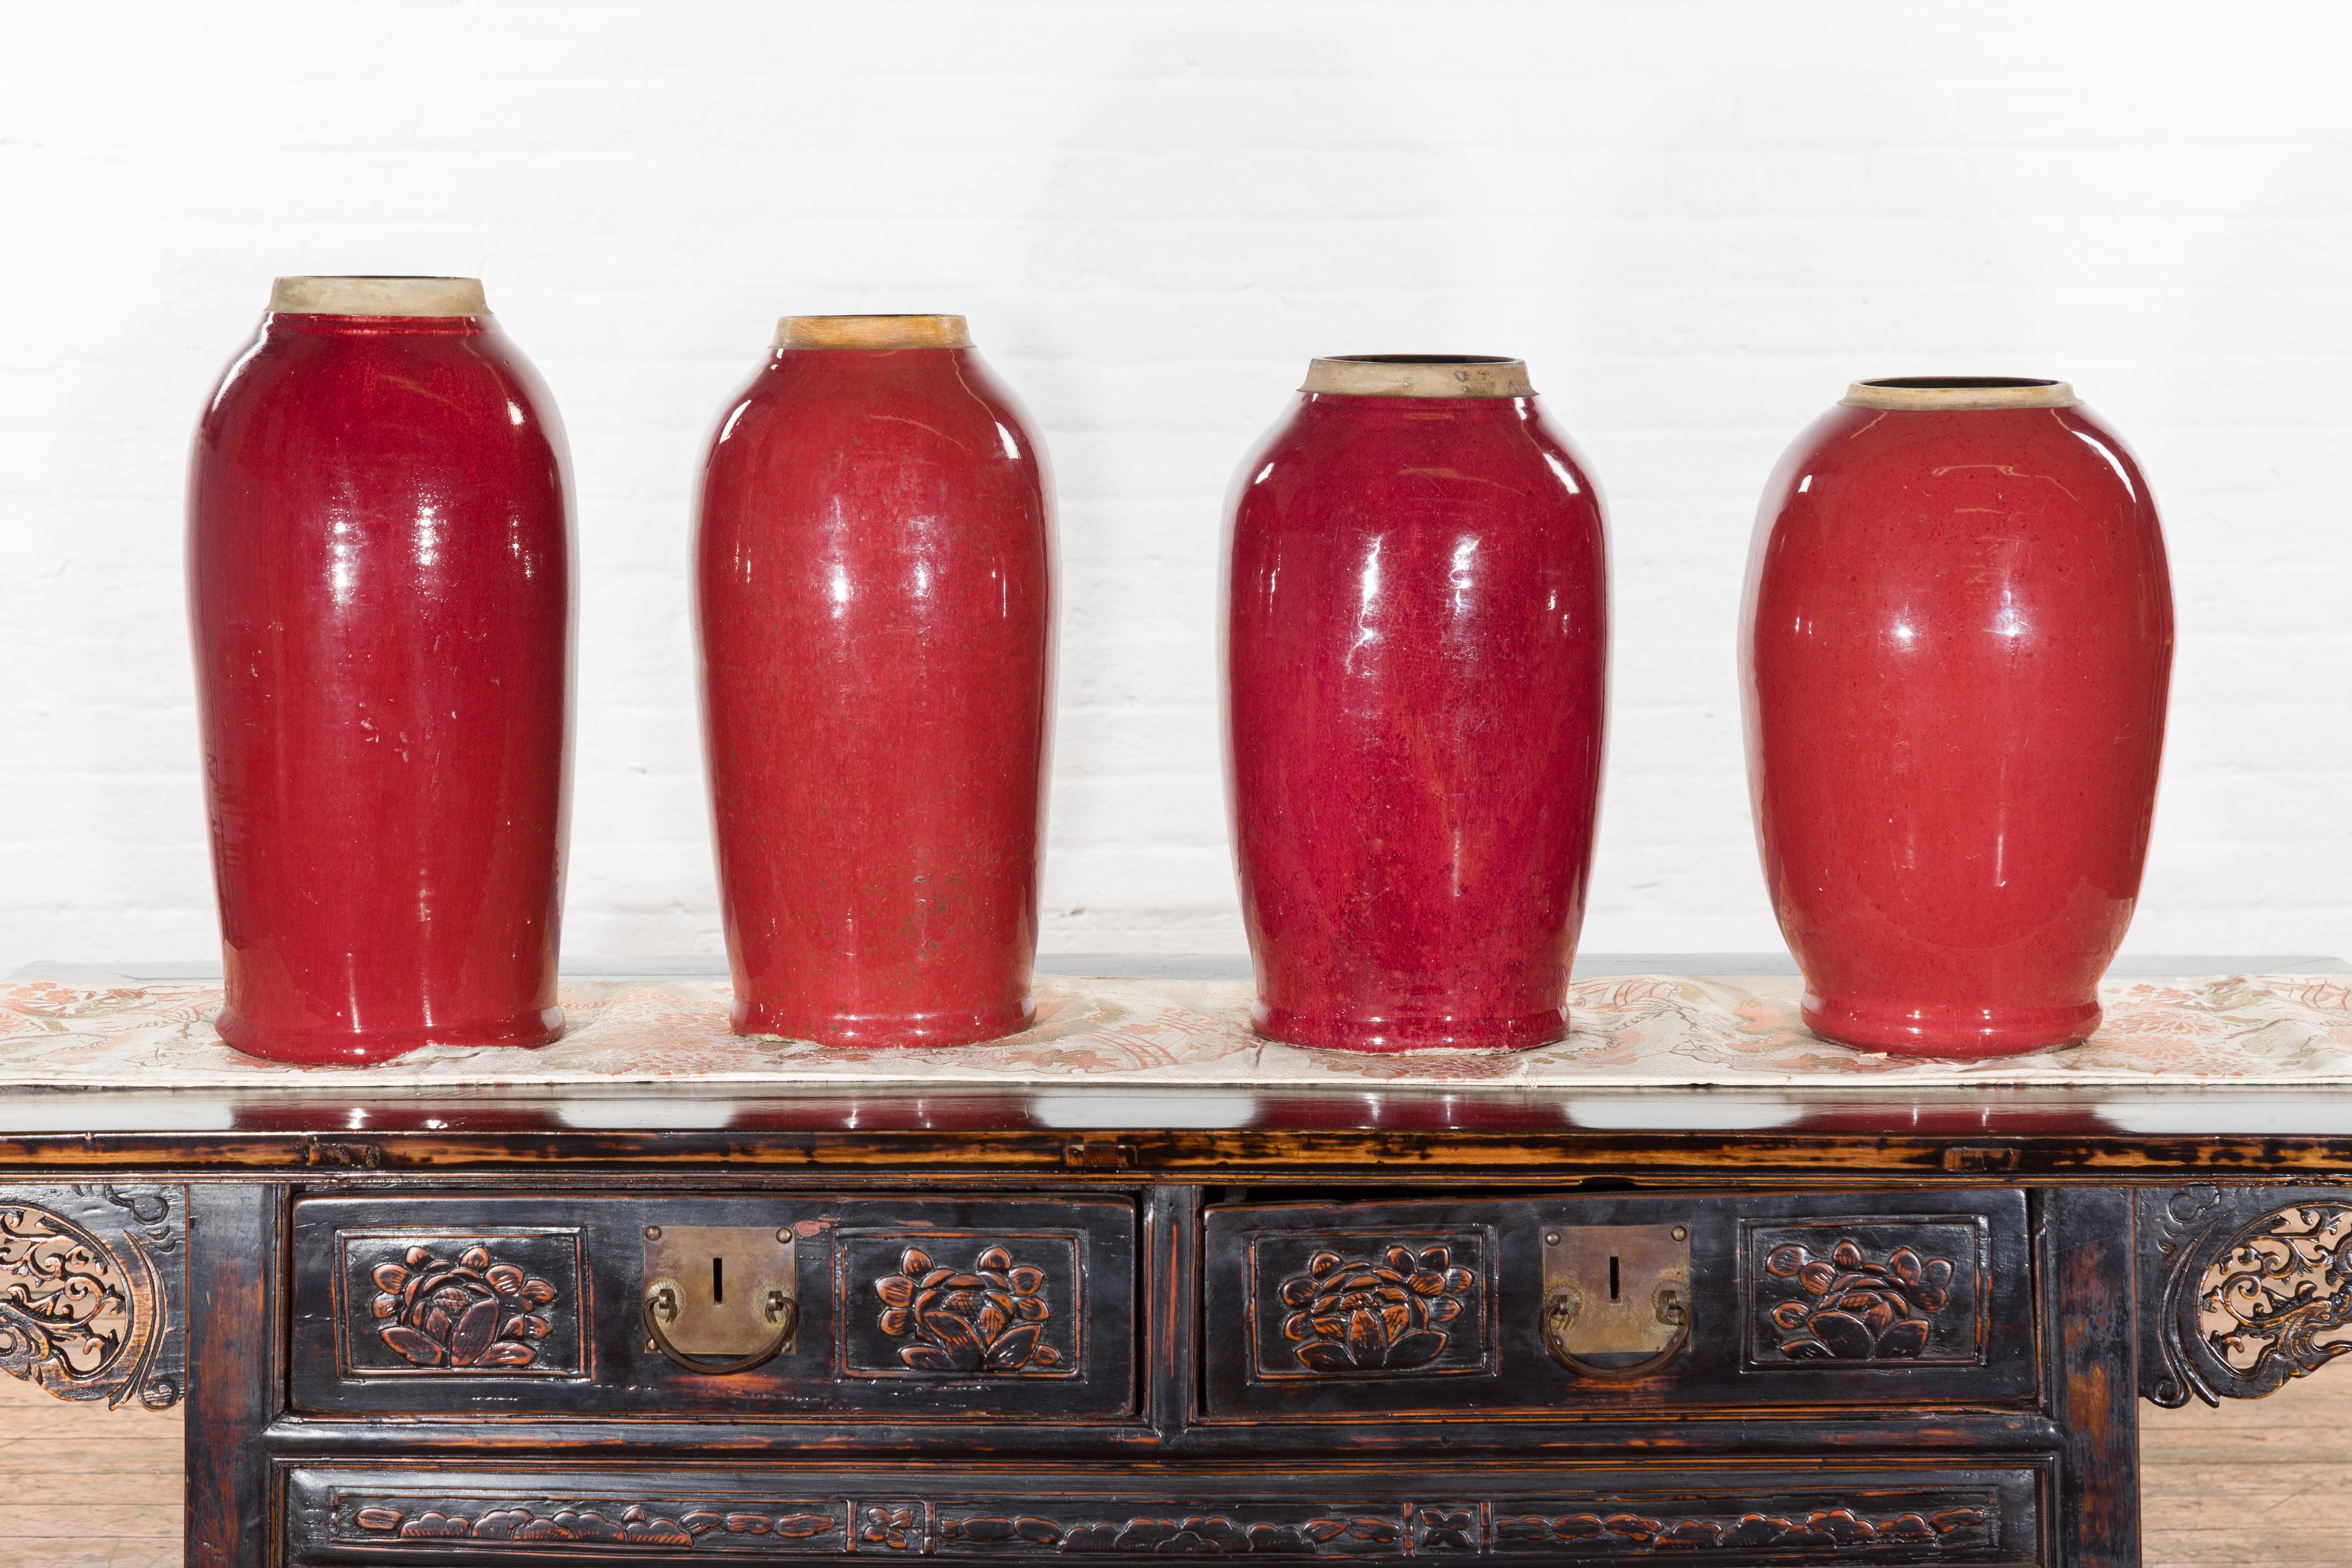 Unsere Vintage-Altarvasen aus der Mitte des 20. Jahrhunderts mit ochsenblutfarbener Glasur sind eine auffällige Ergänzung zu unserer umfangreichen Sammlung antiker und Vintage-Vasen. Alle vier Vintage-Vasen stammen aus China und sind mit